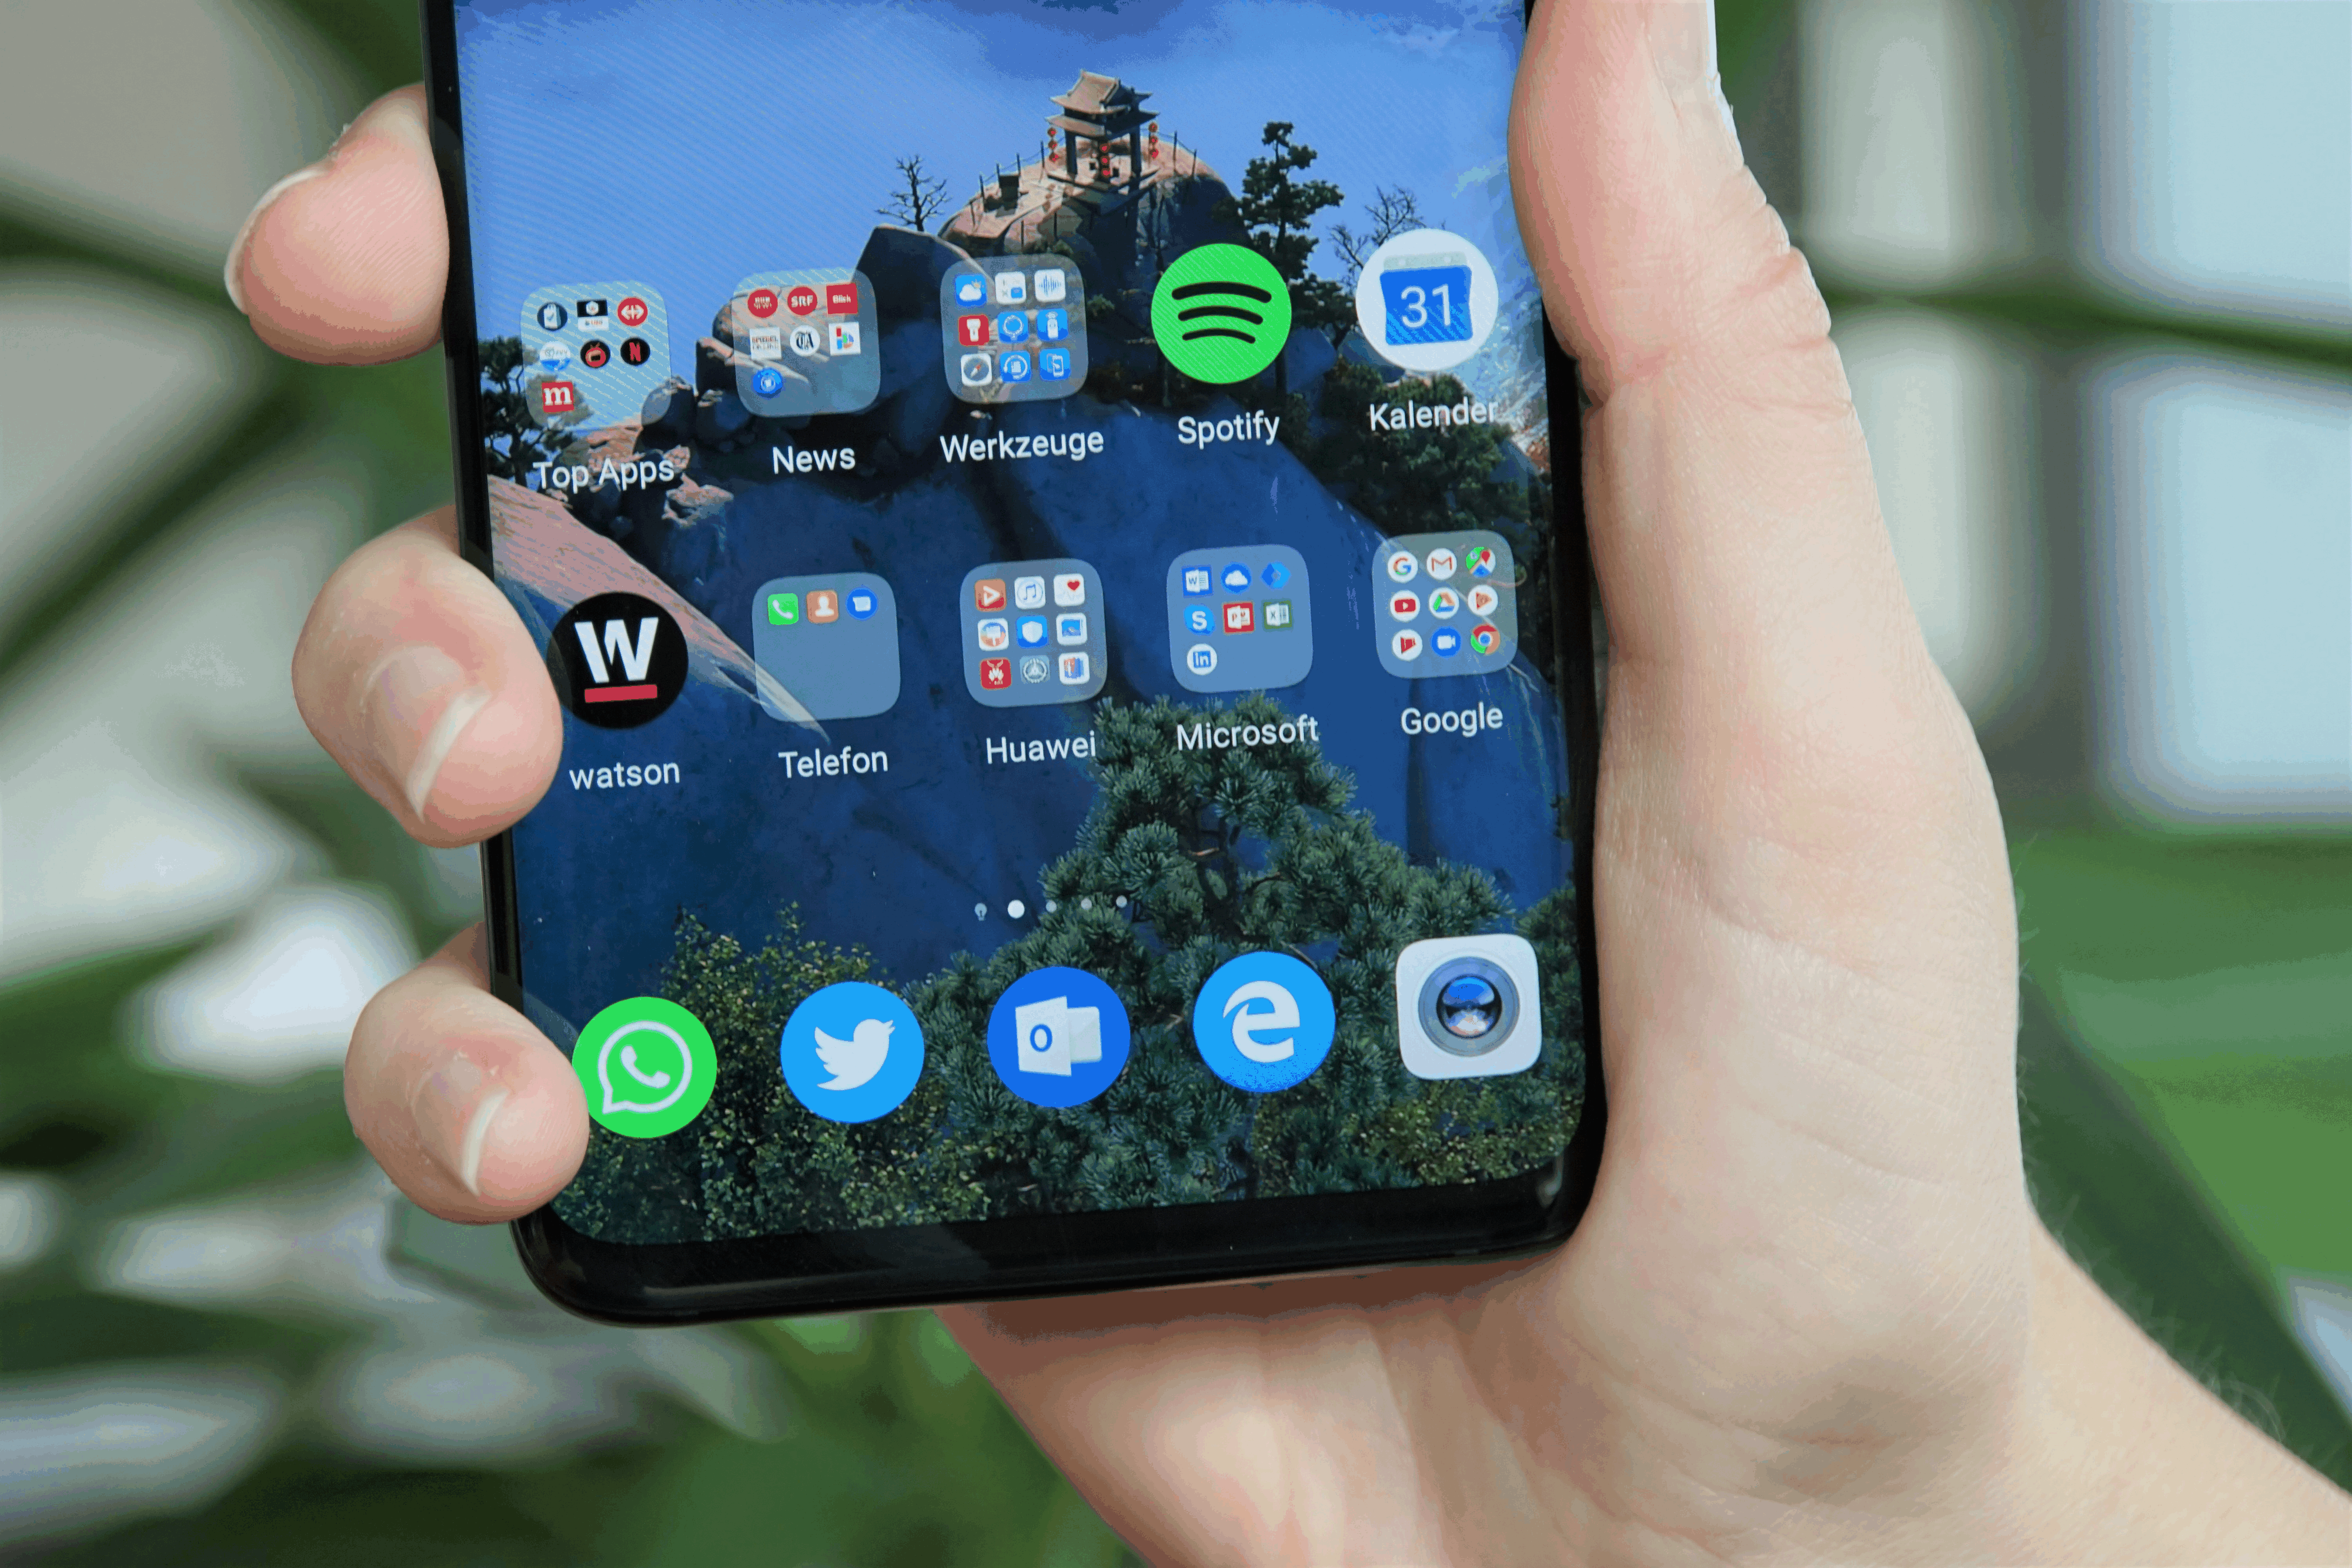 Das Handy mit Android 9 kann vollständig mit intuitiven Gesten bedient werden. Die Navi-Buttons (Zurück, Home, App-Manager) können aber immer noch aktiviert werden, wenn man dies möchte.